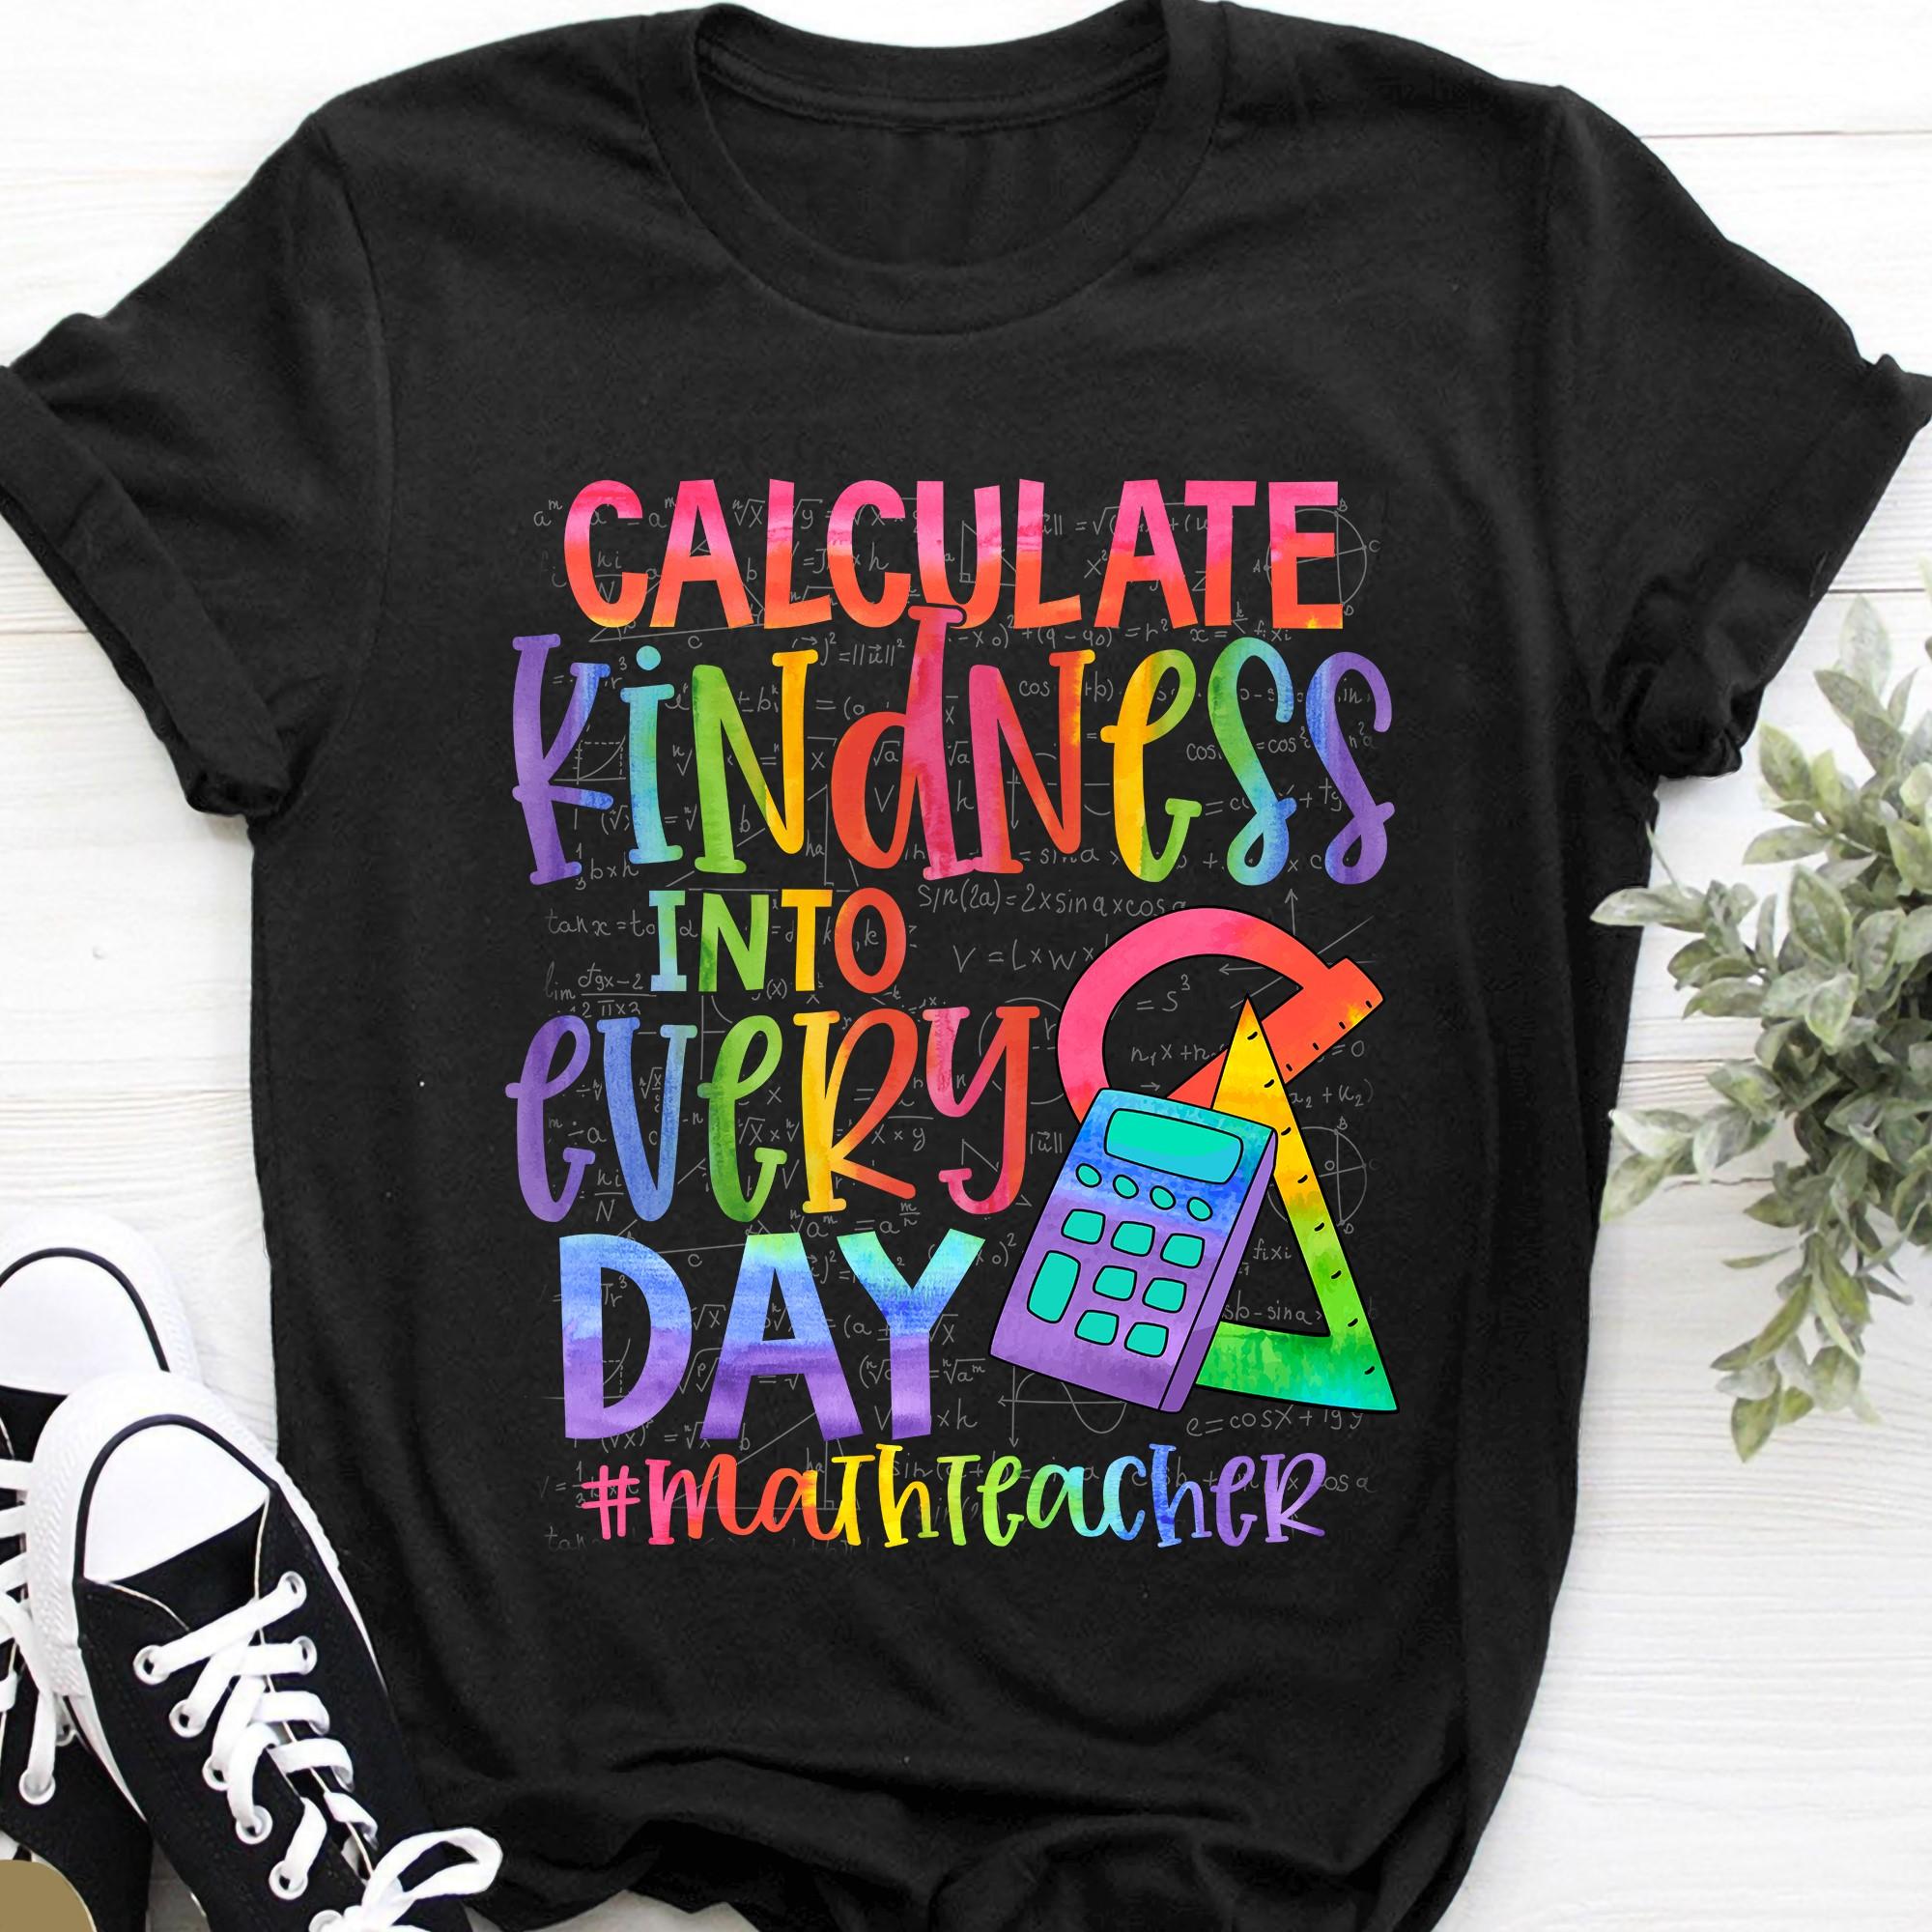 Calculate kindness into every day - Math teacher, teacher the job